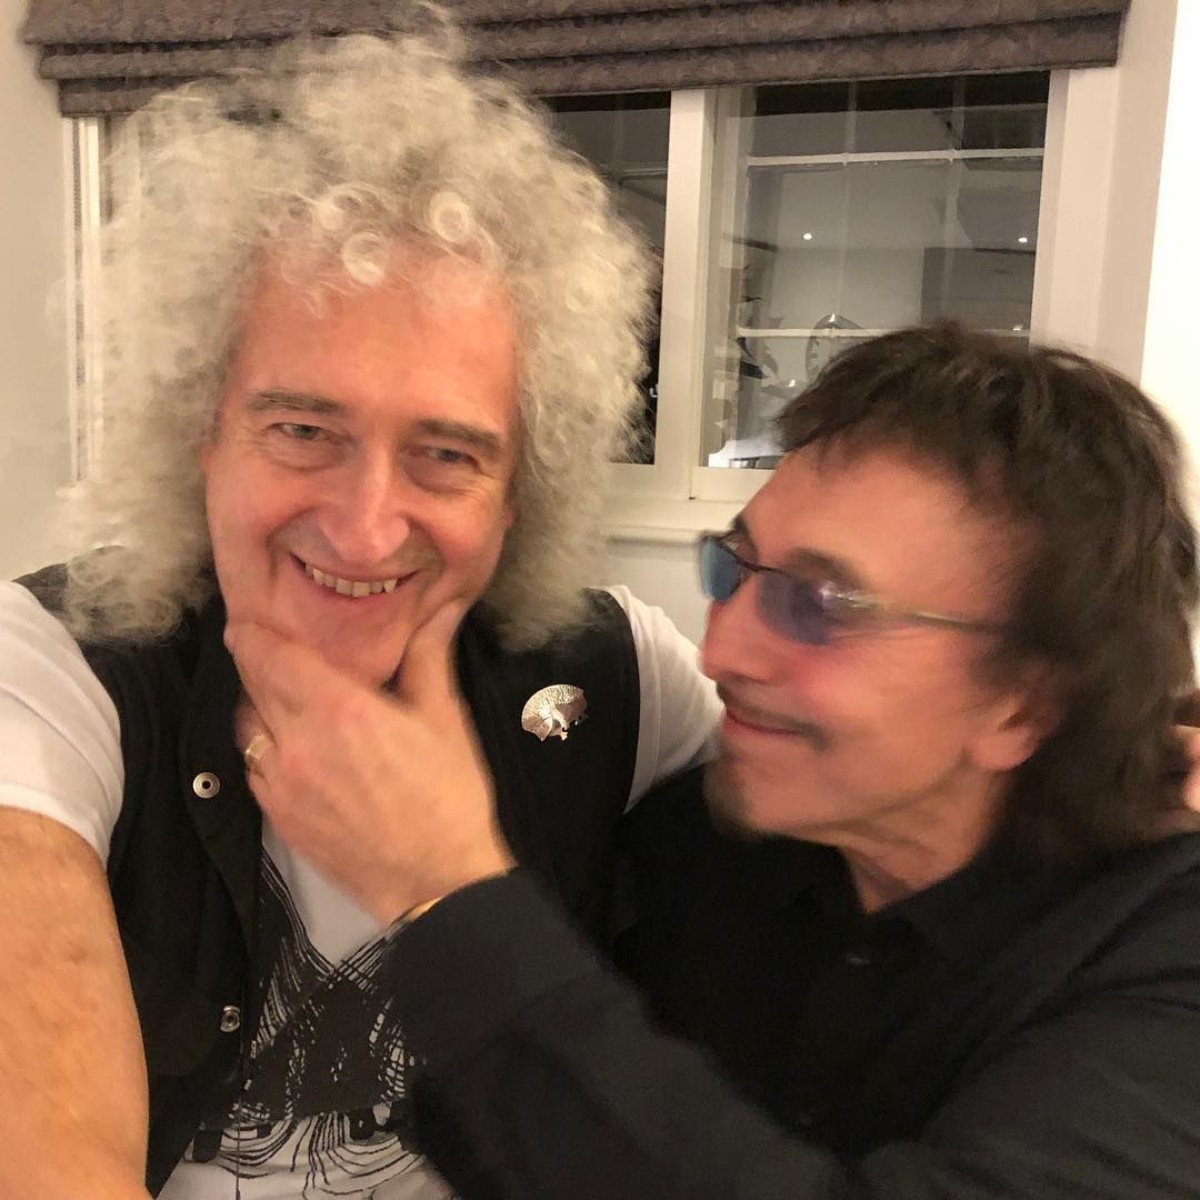 Brian May and Tony Iommi